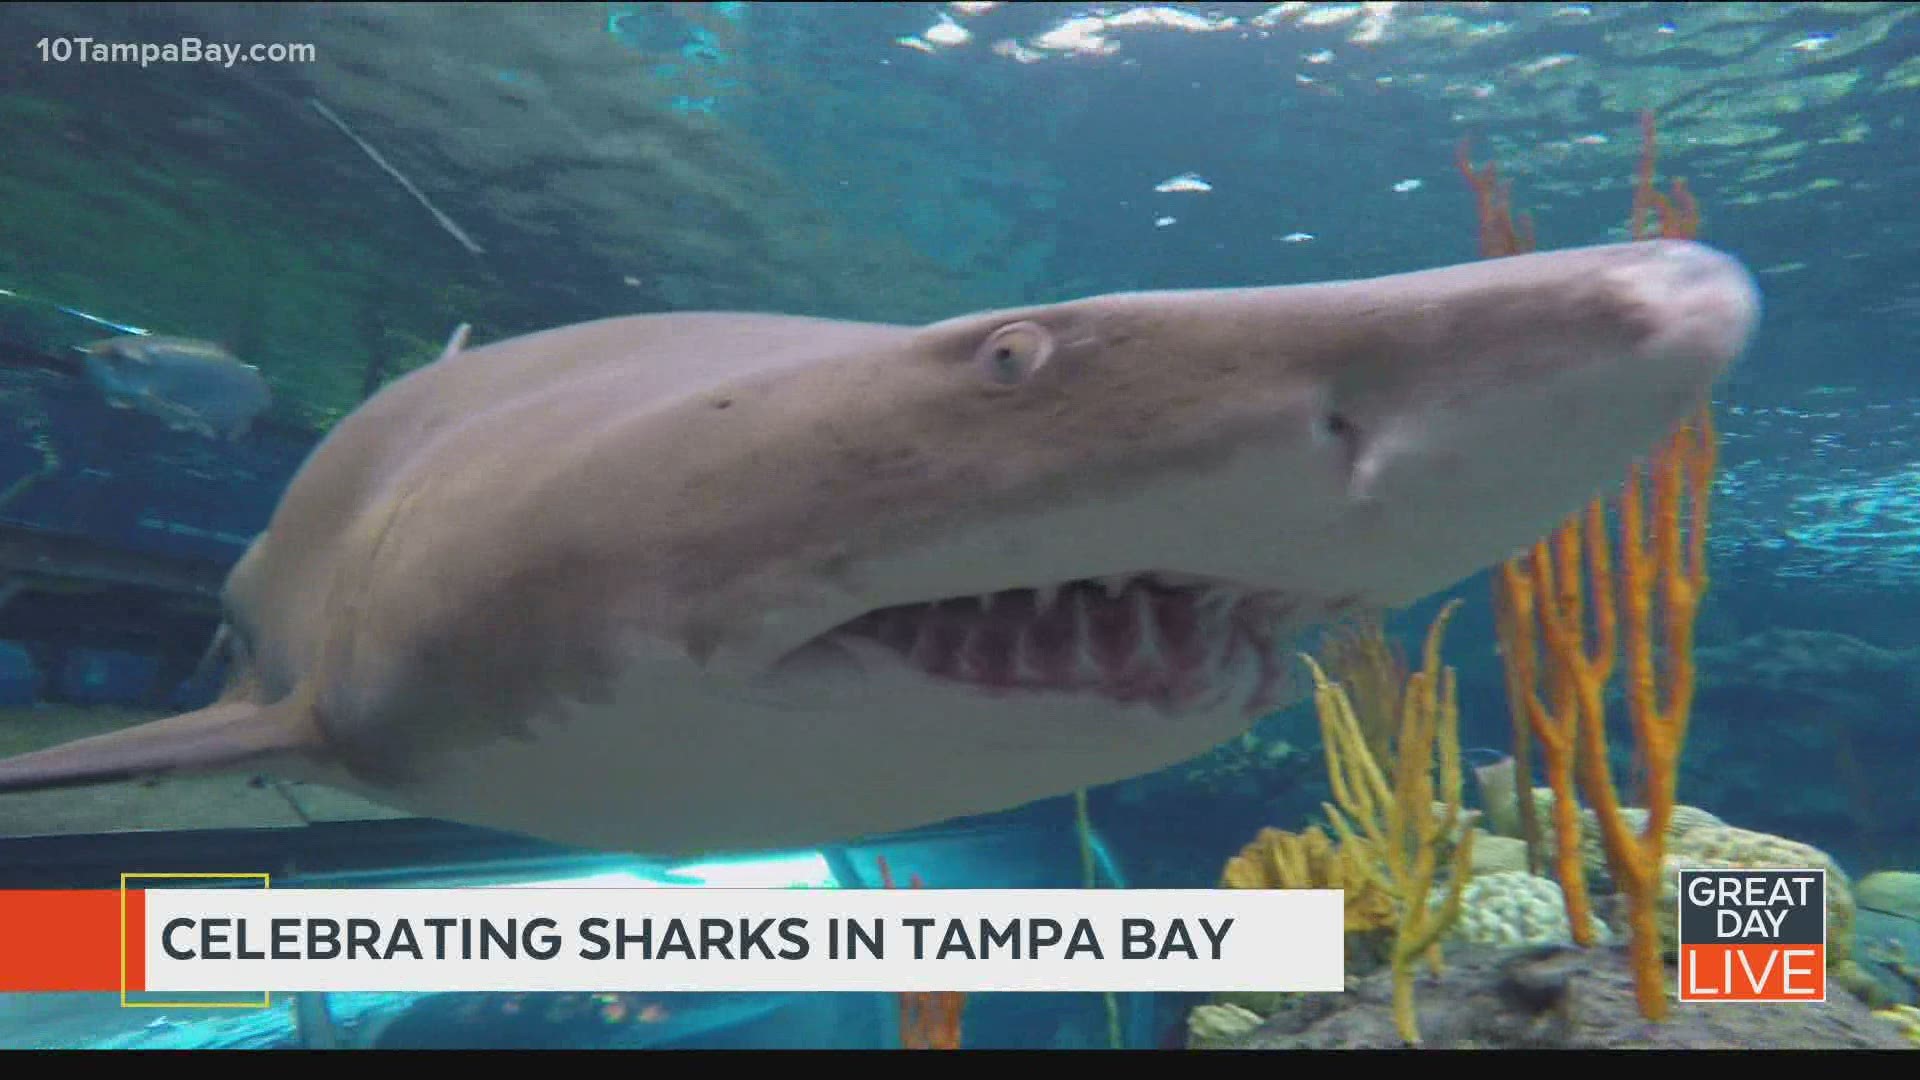 Celebrating sharks in Tampa Bay